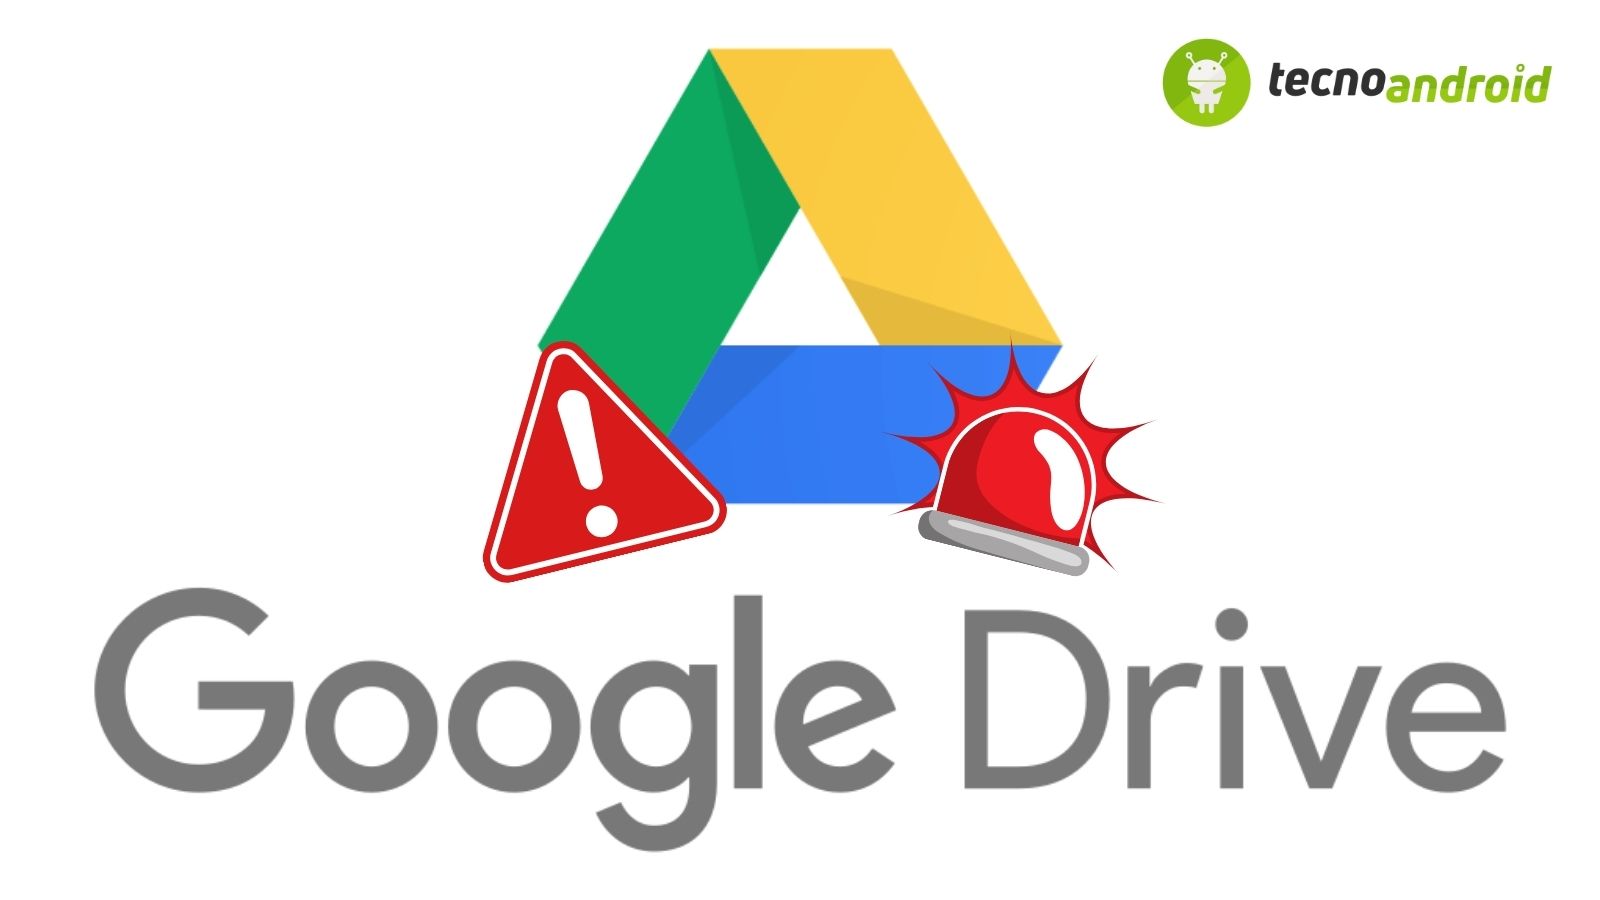 Google Drive sotto attacco: sicurezza violata per 1milione di utenti